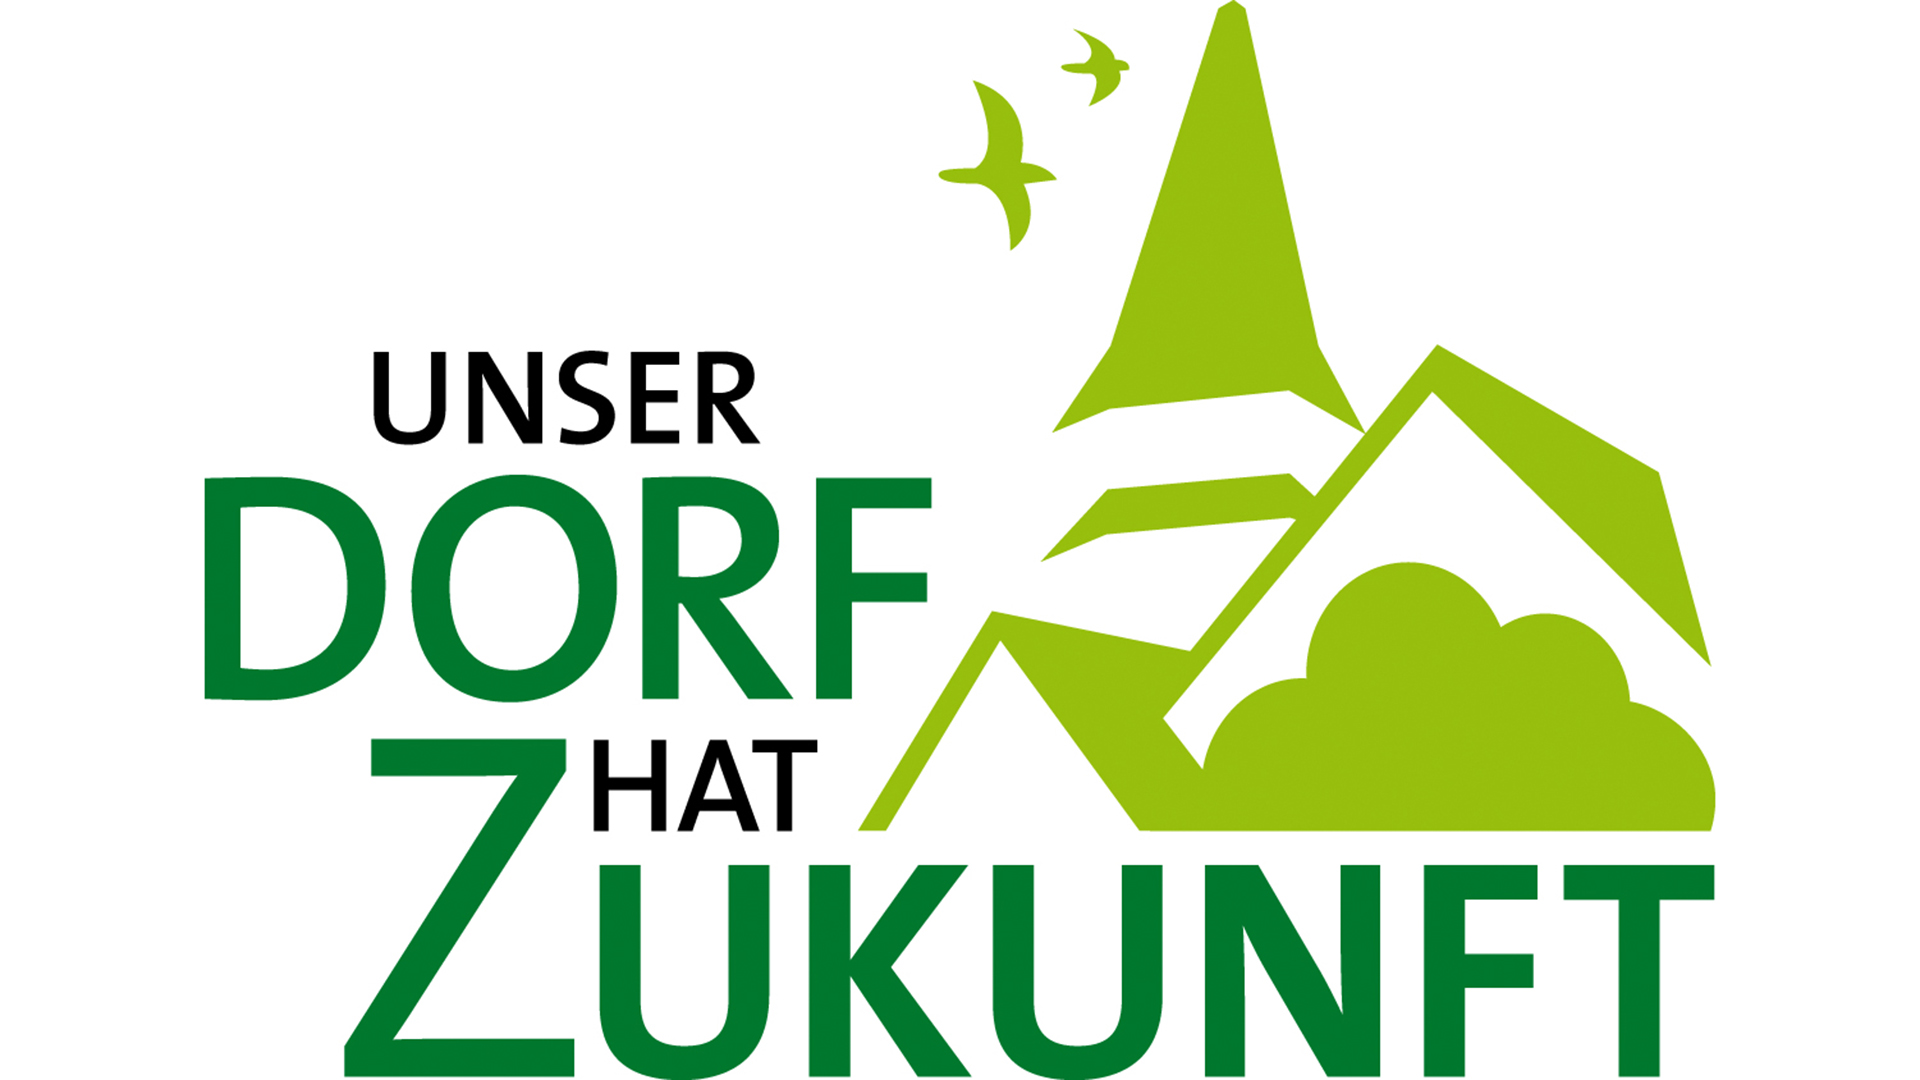 Das Logo "Unser Dorf hat Zukunft" zeigt einen grünschwarzen Schriftzug vor einem stilisierten Kirchturm mit zwei Hausgiebeln, einem Baumwipfeln und zwei fliegenden Schwalben in hellerem grün.